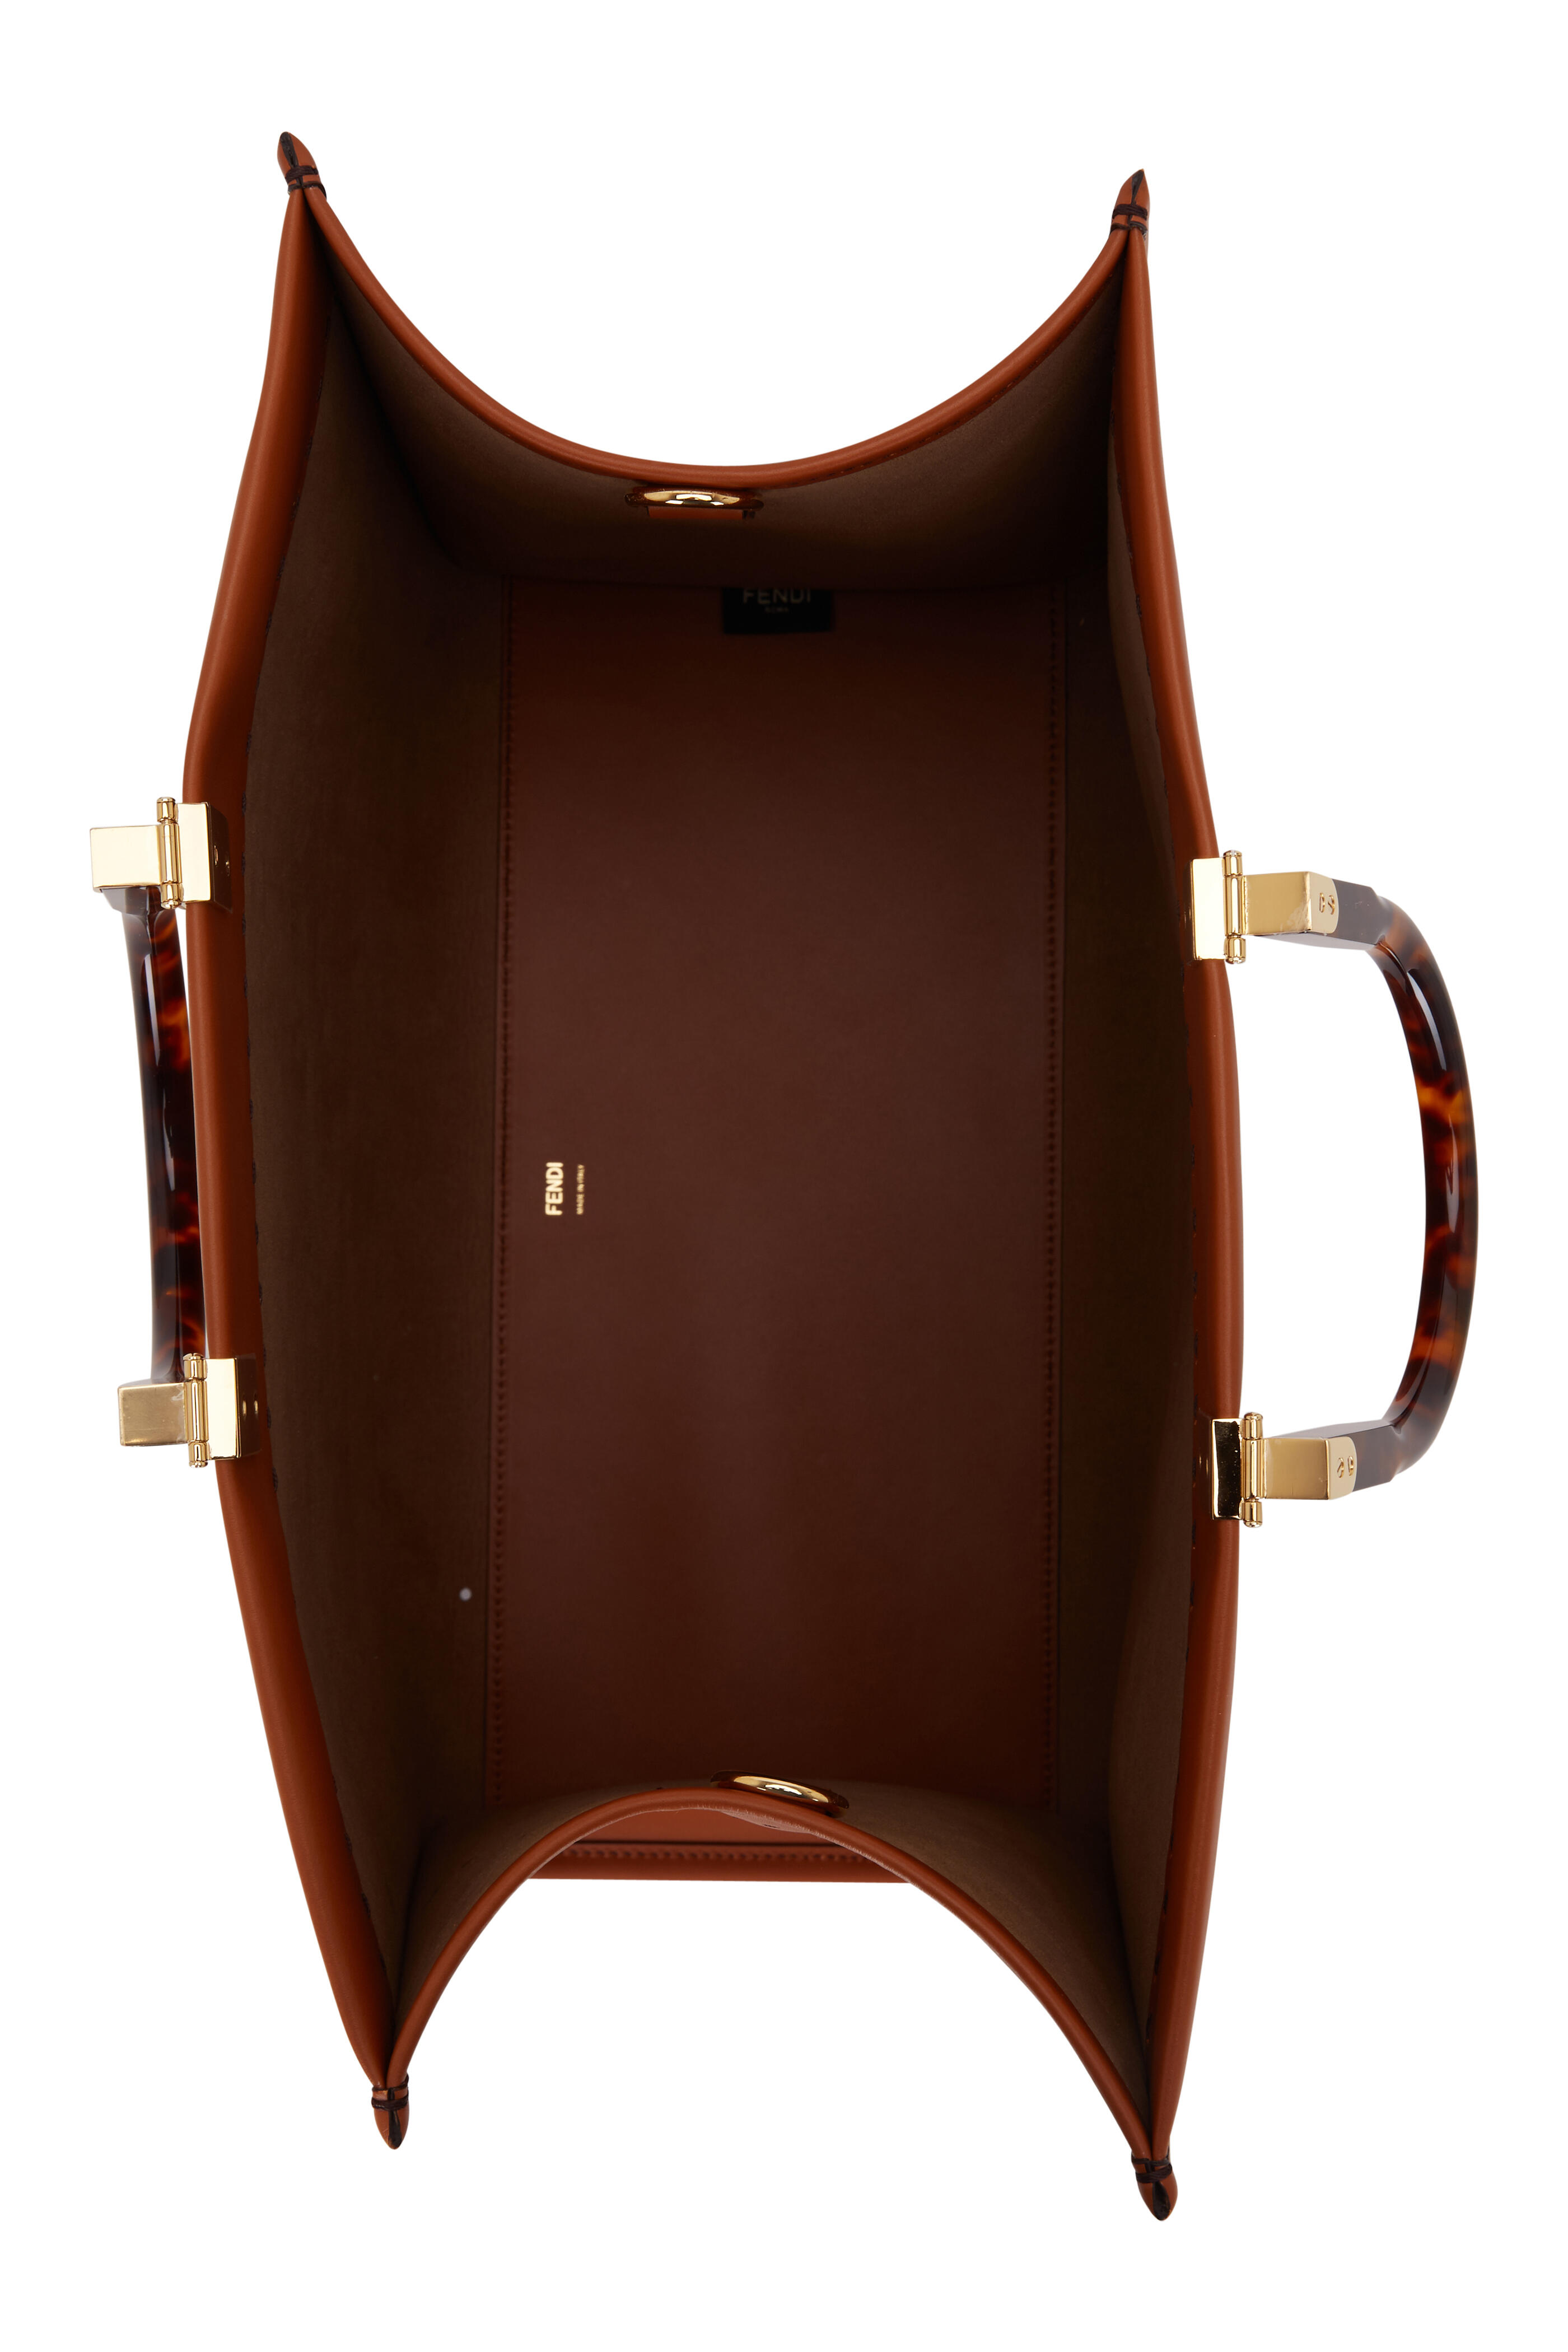 Tip: Louis Vuitton Handbag (Cognac)